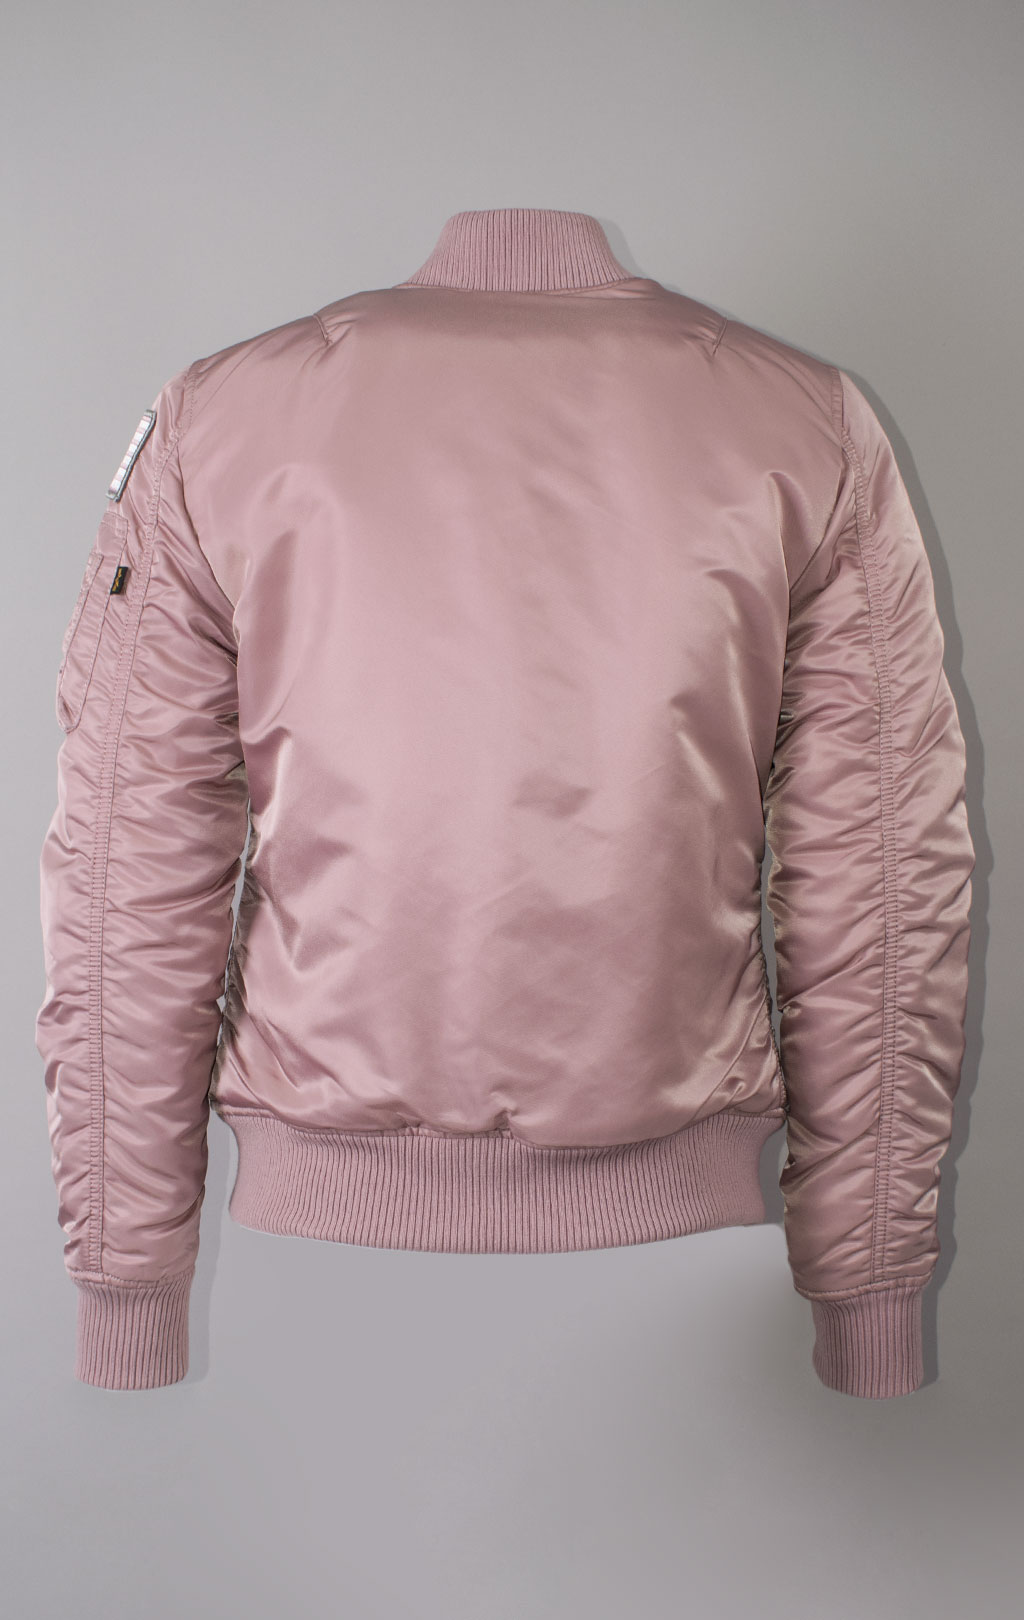 Женская куртка-бомбер лётная ALPHA INDUSTRIES VF NASA MA-1 silver pink 